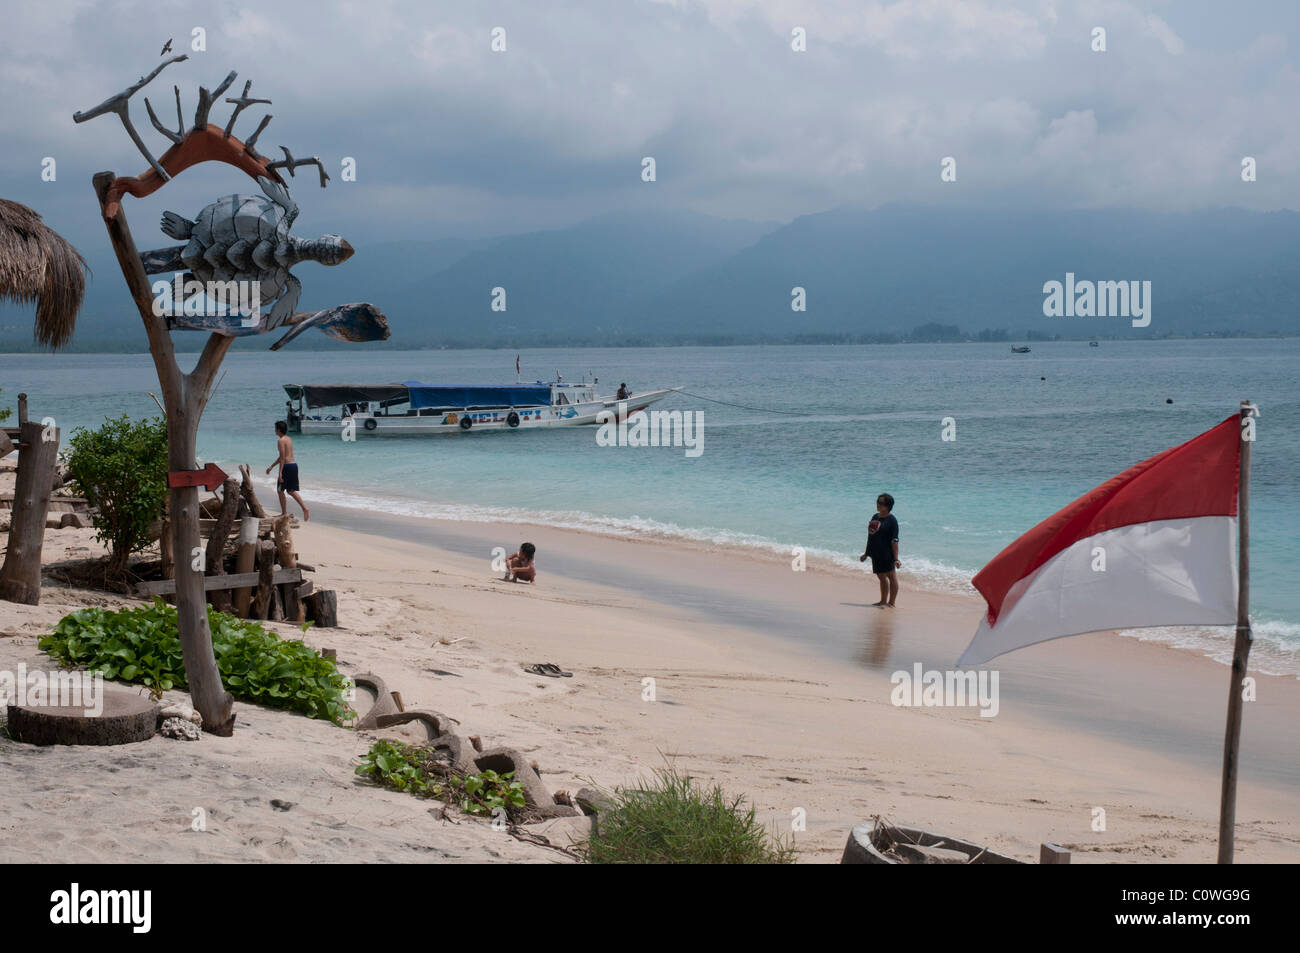 Plage de Gili Air l'île la plus petite de la groupe Gili au large de Lombok en Indonésie Banque D'Images